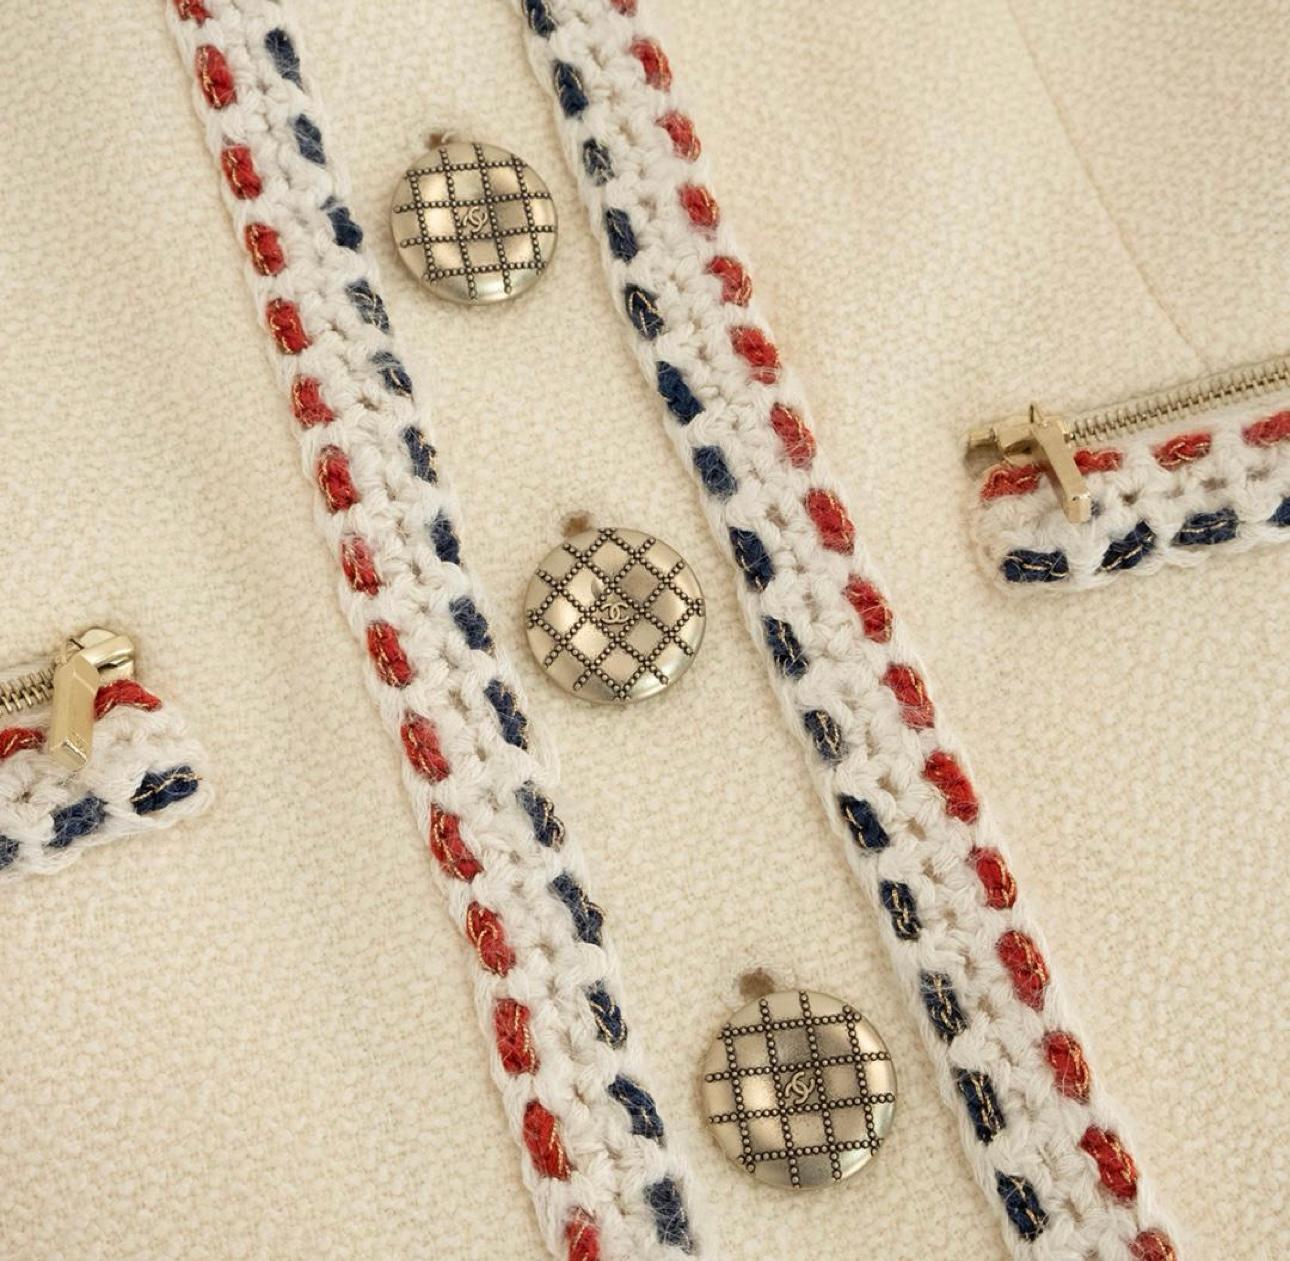 Atemberaubende Chanel ecru Tweed Jacke mit CC Logo Knöpfen.
- Unterschrift geflochtener Vertragsbehang
- tonales Seidenfutter
Größenbezeichnung 34 FR. Tadelloser Zustand.